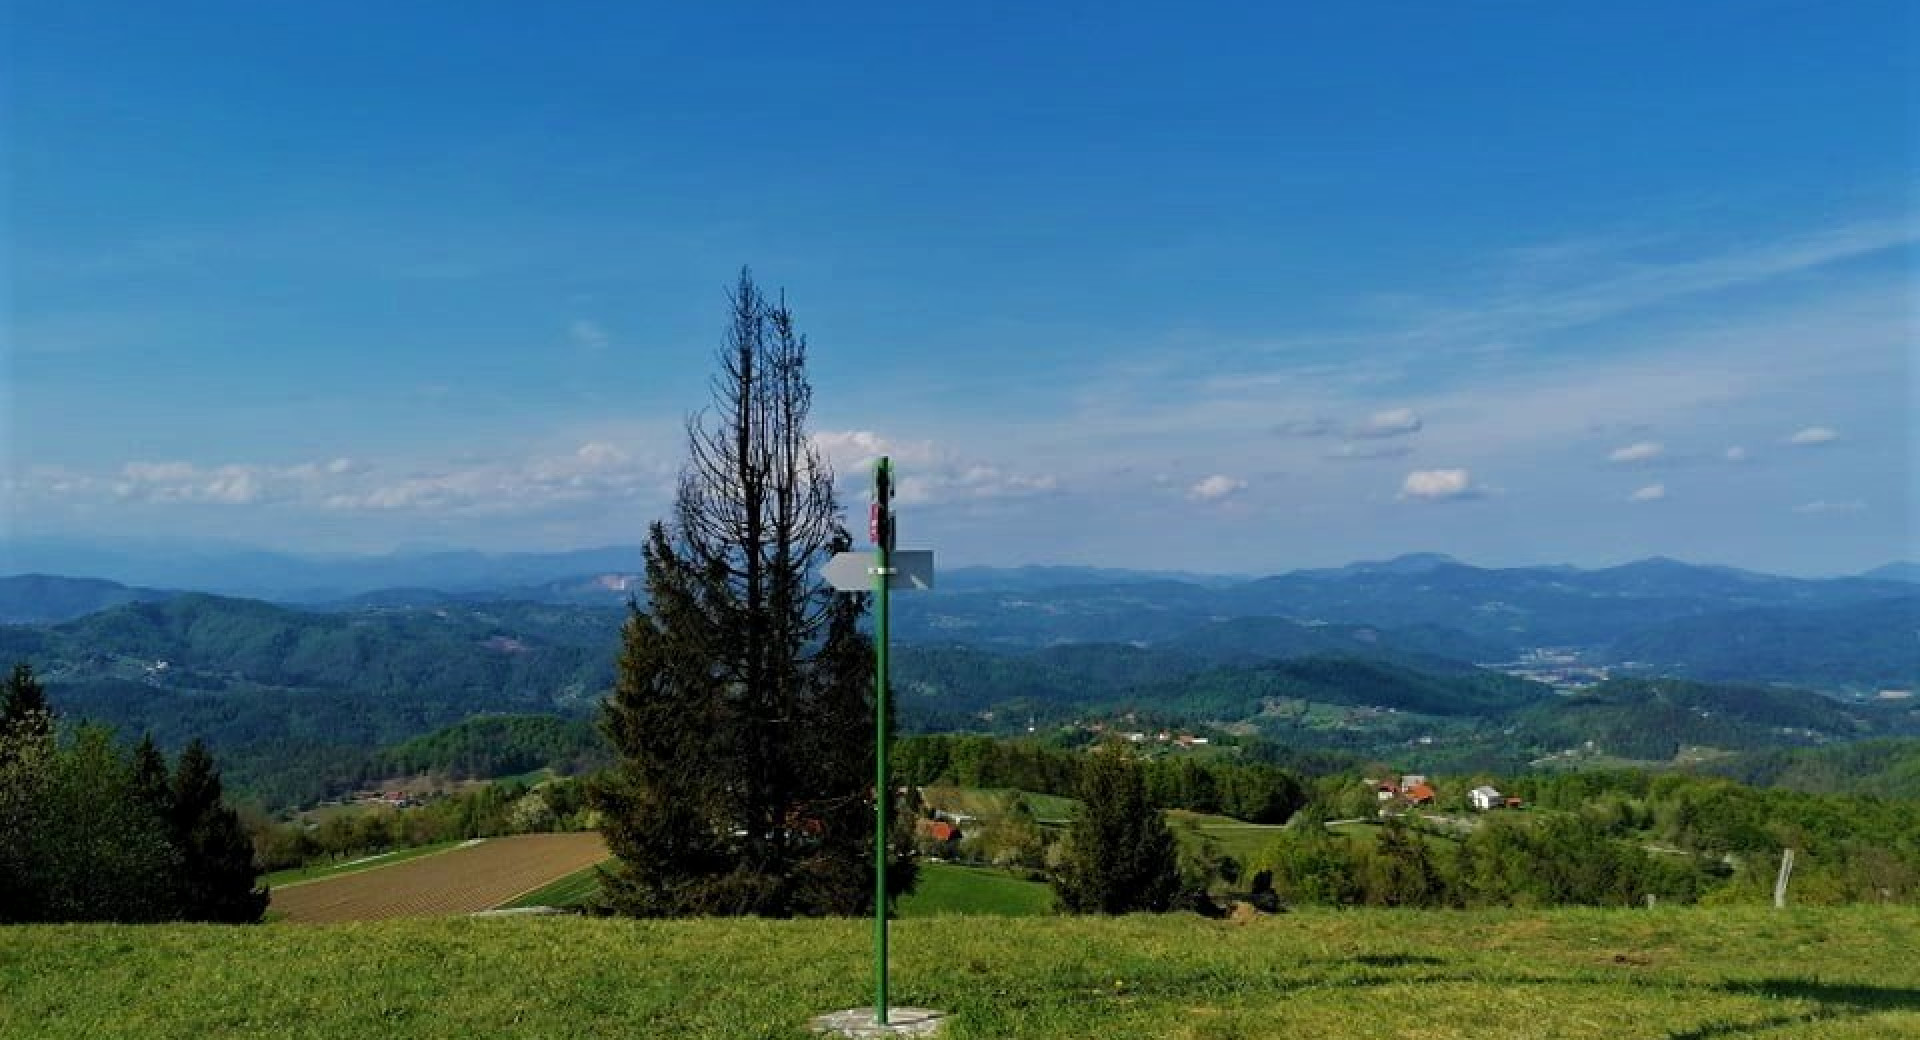 Razgledna točka Obolno (776 m), najvišji vrh v občini Ivančna Gorica; zelen travnik, s katerega se odpira čudovit razgled